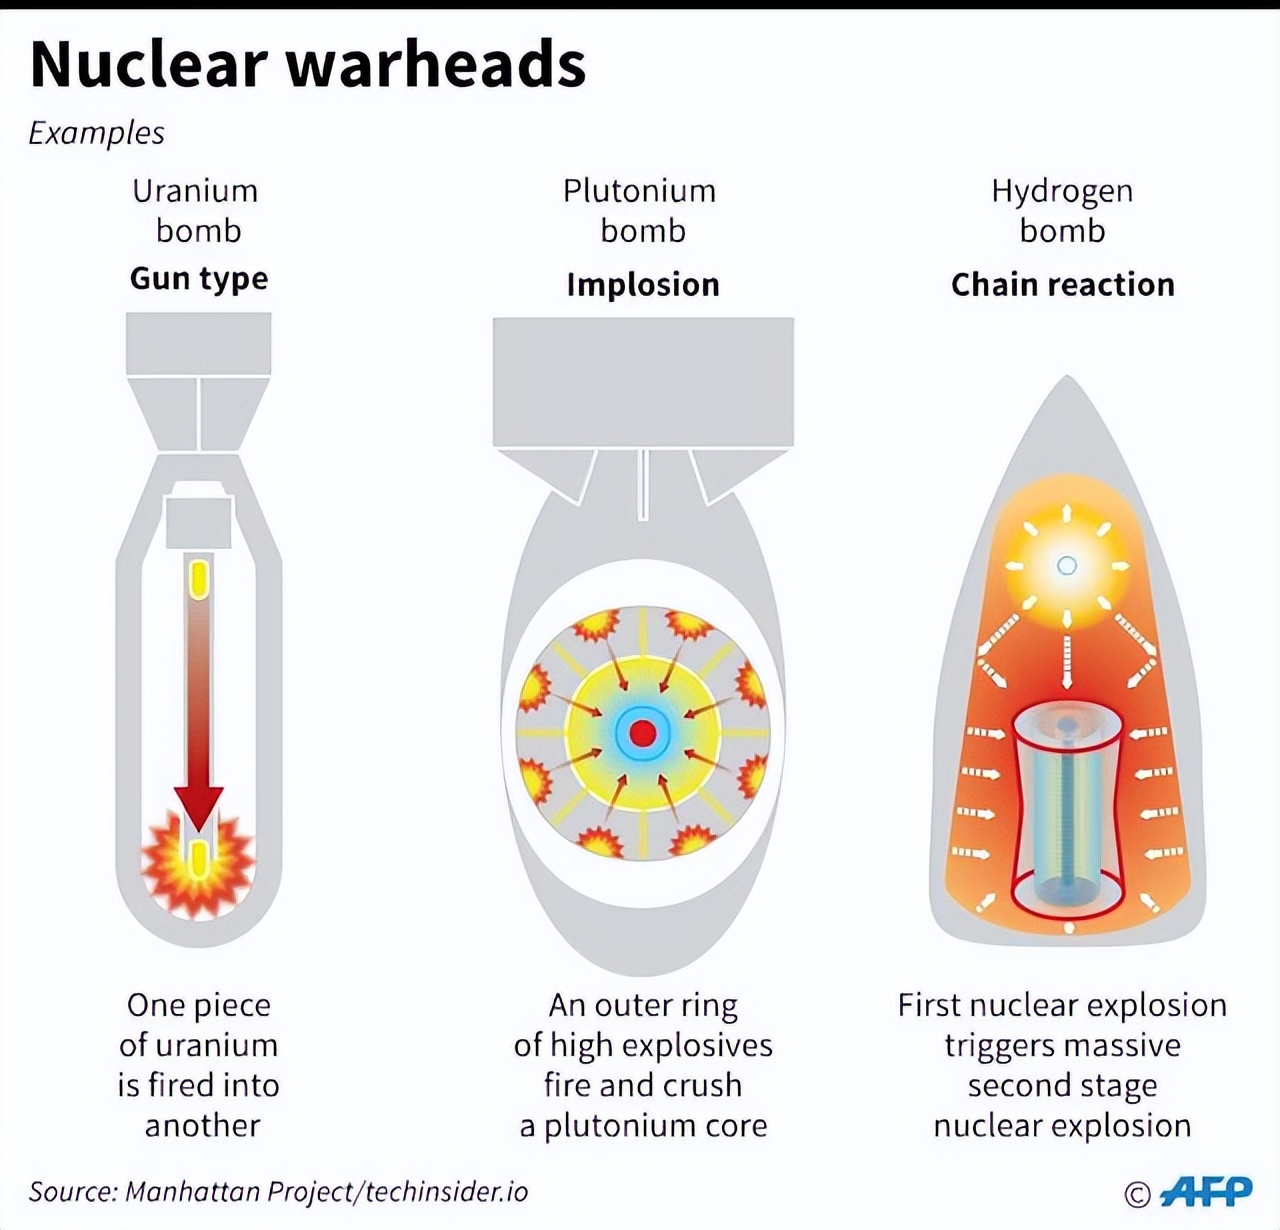 氢弹原理大家都知道,为何印度还没造出来?三相弹究竟有多难?